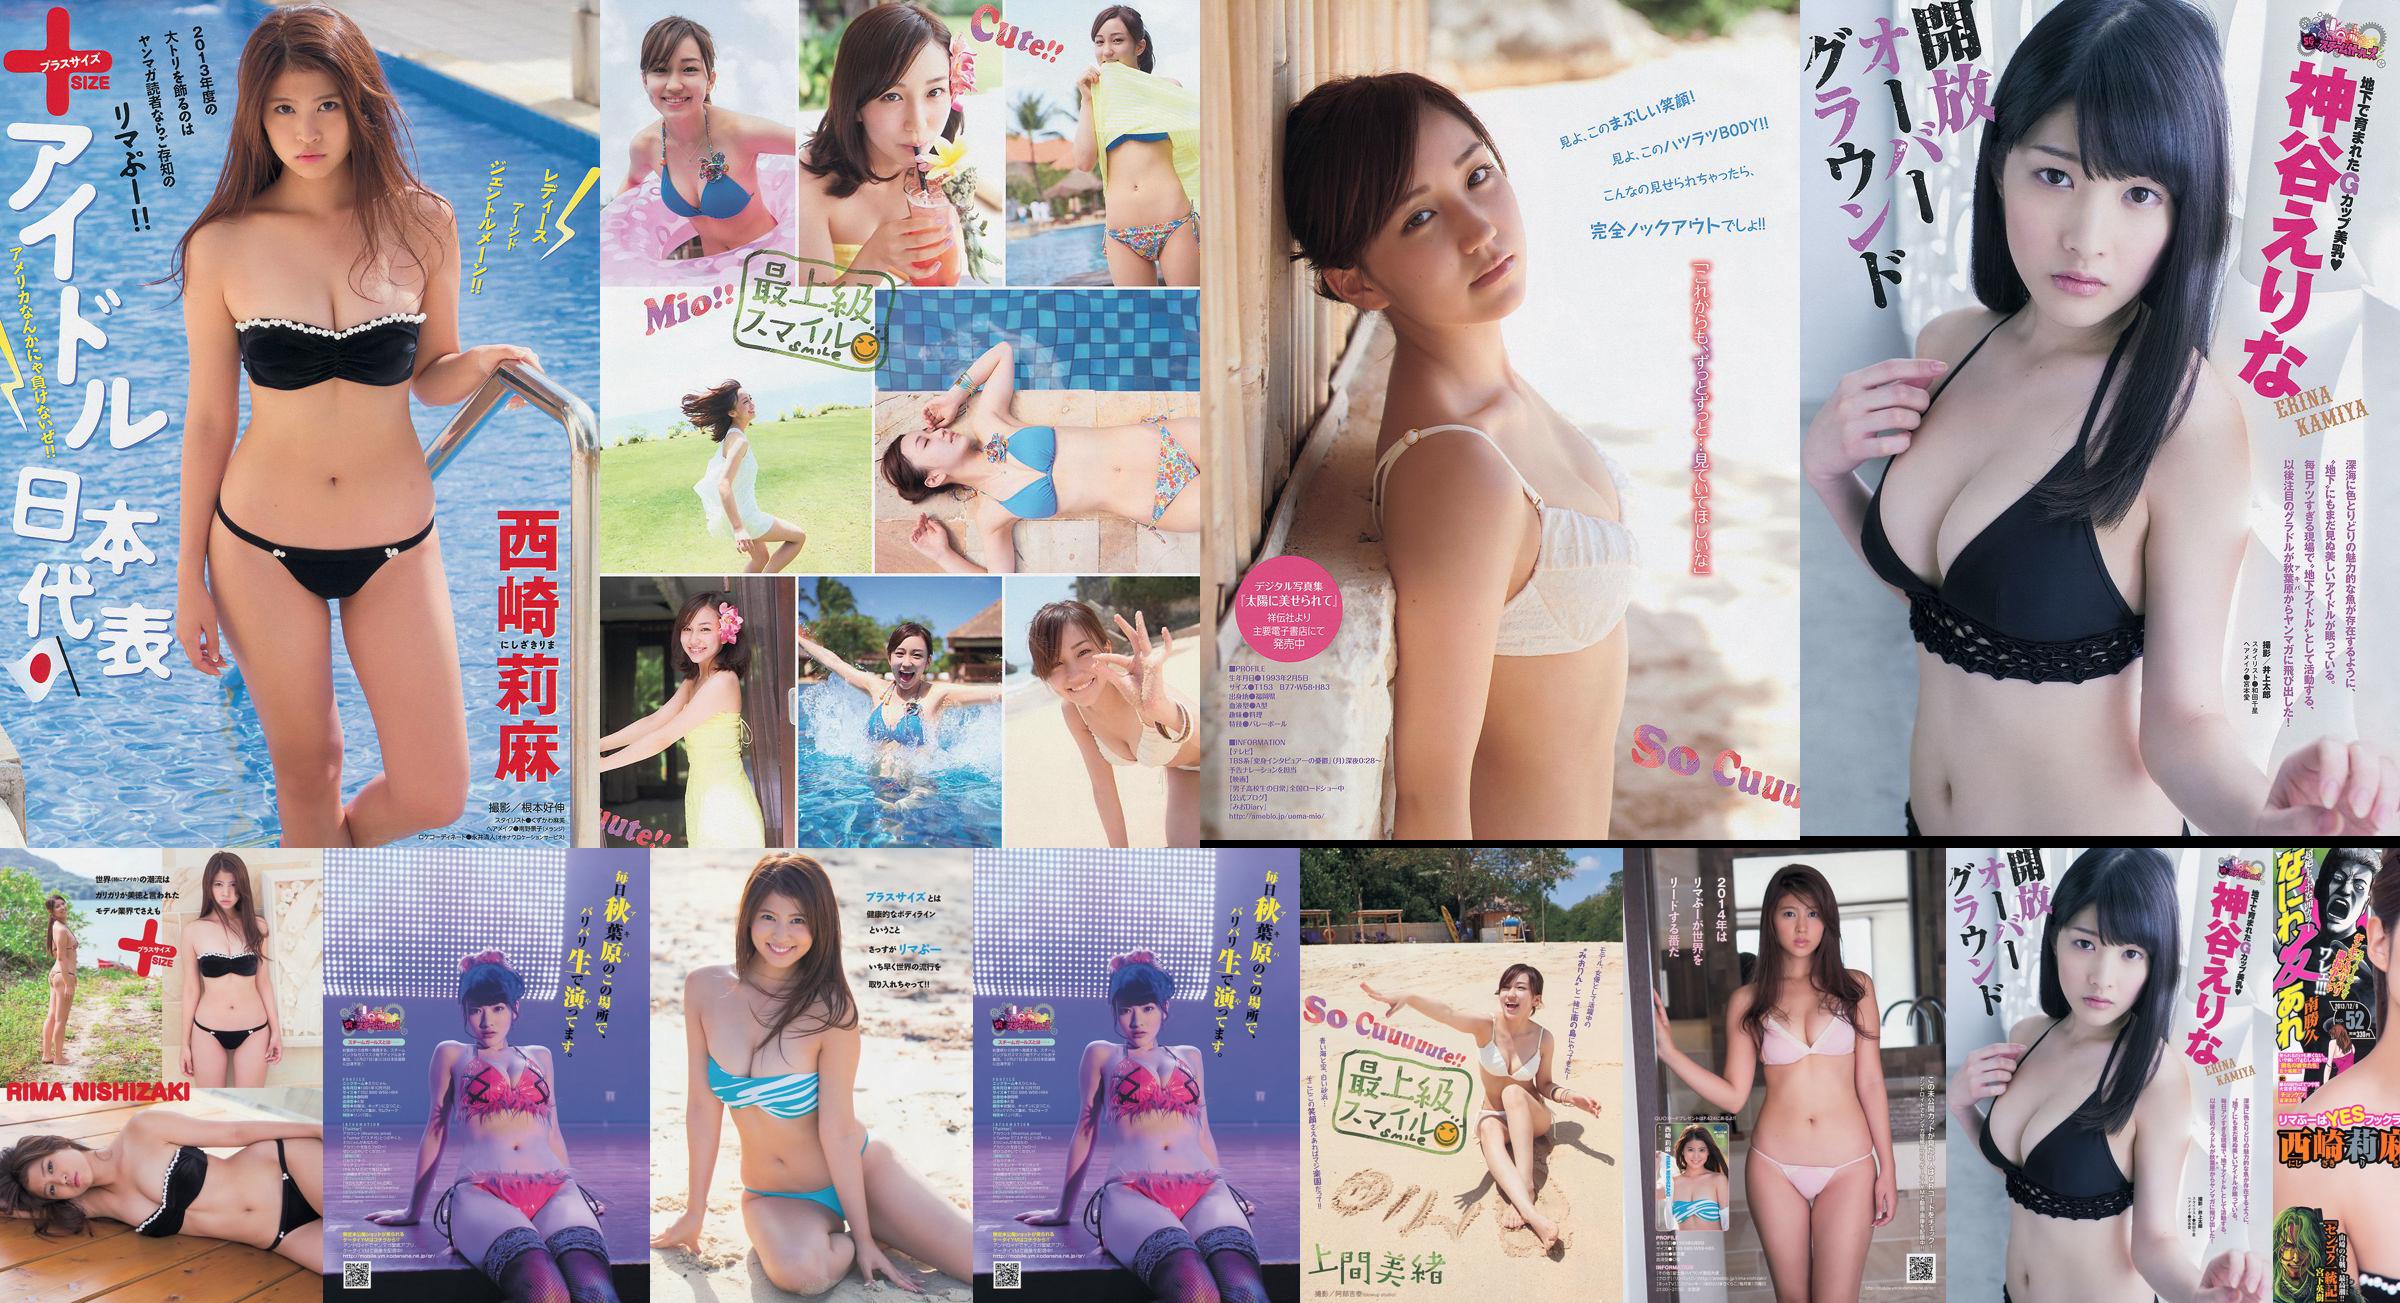 [Young Magazine] Rima Nishizaki Mio Uema Erina Kamiya 2013 No.52 Foto Moshi No.1df66a Pagina 4